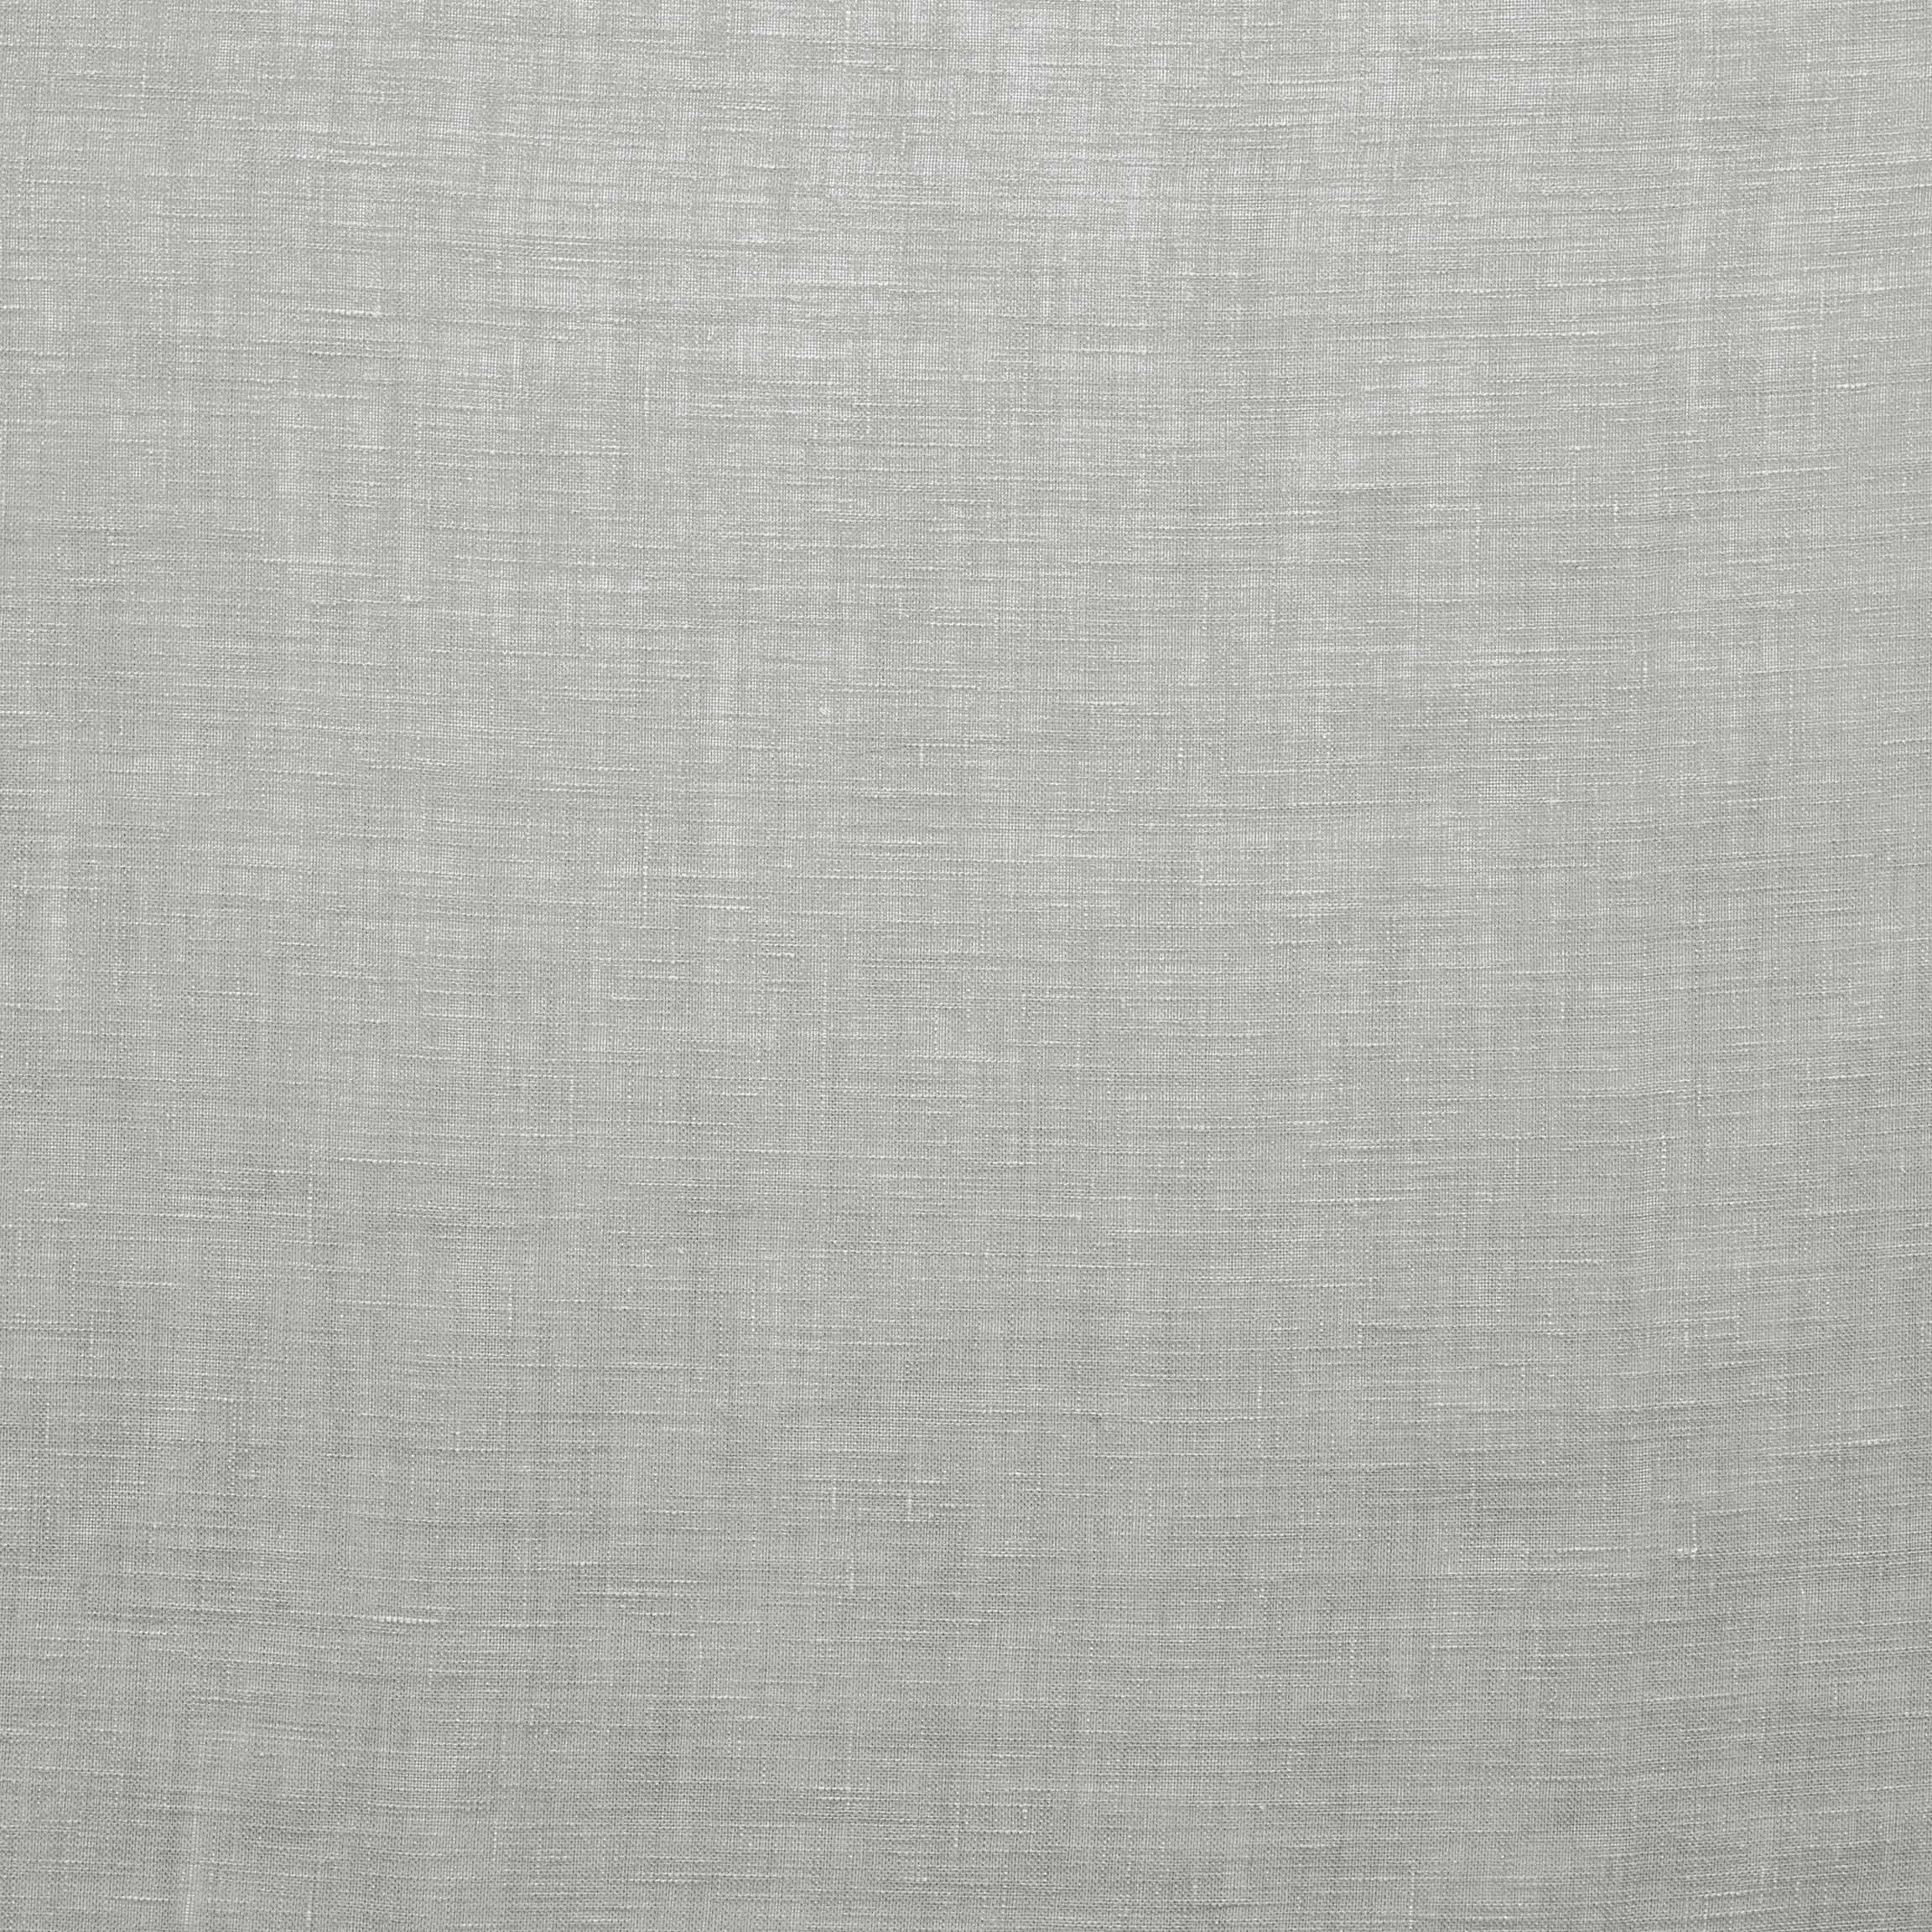  Портьерная ткань MADDY GREY, ширина 319 см  - Фото